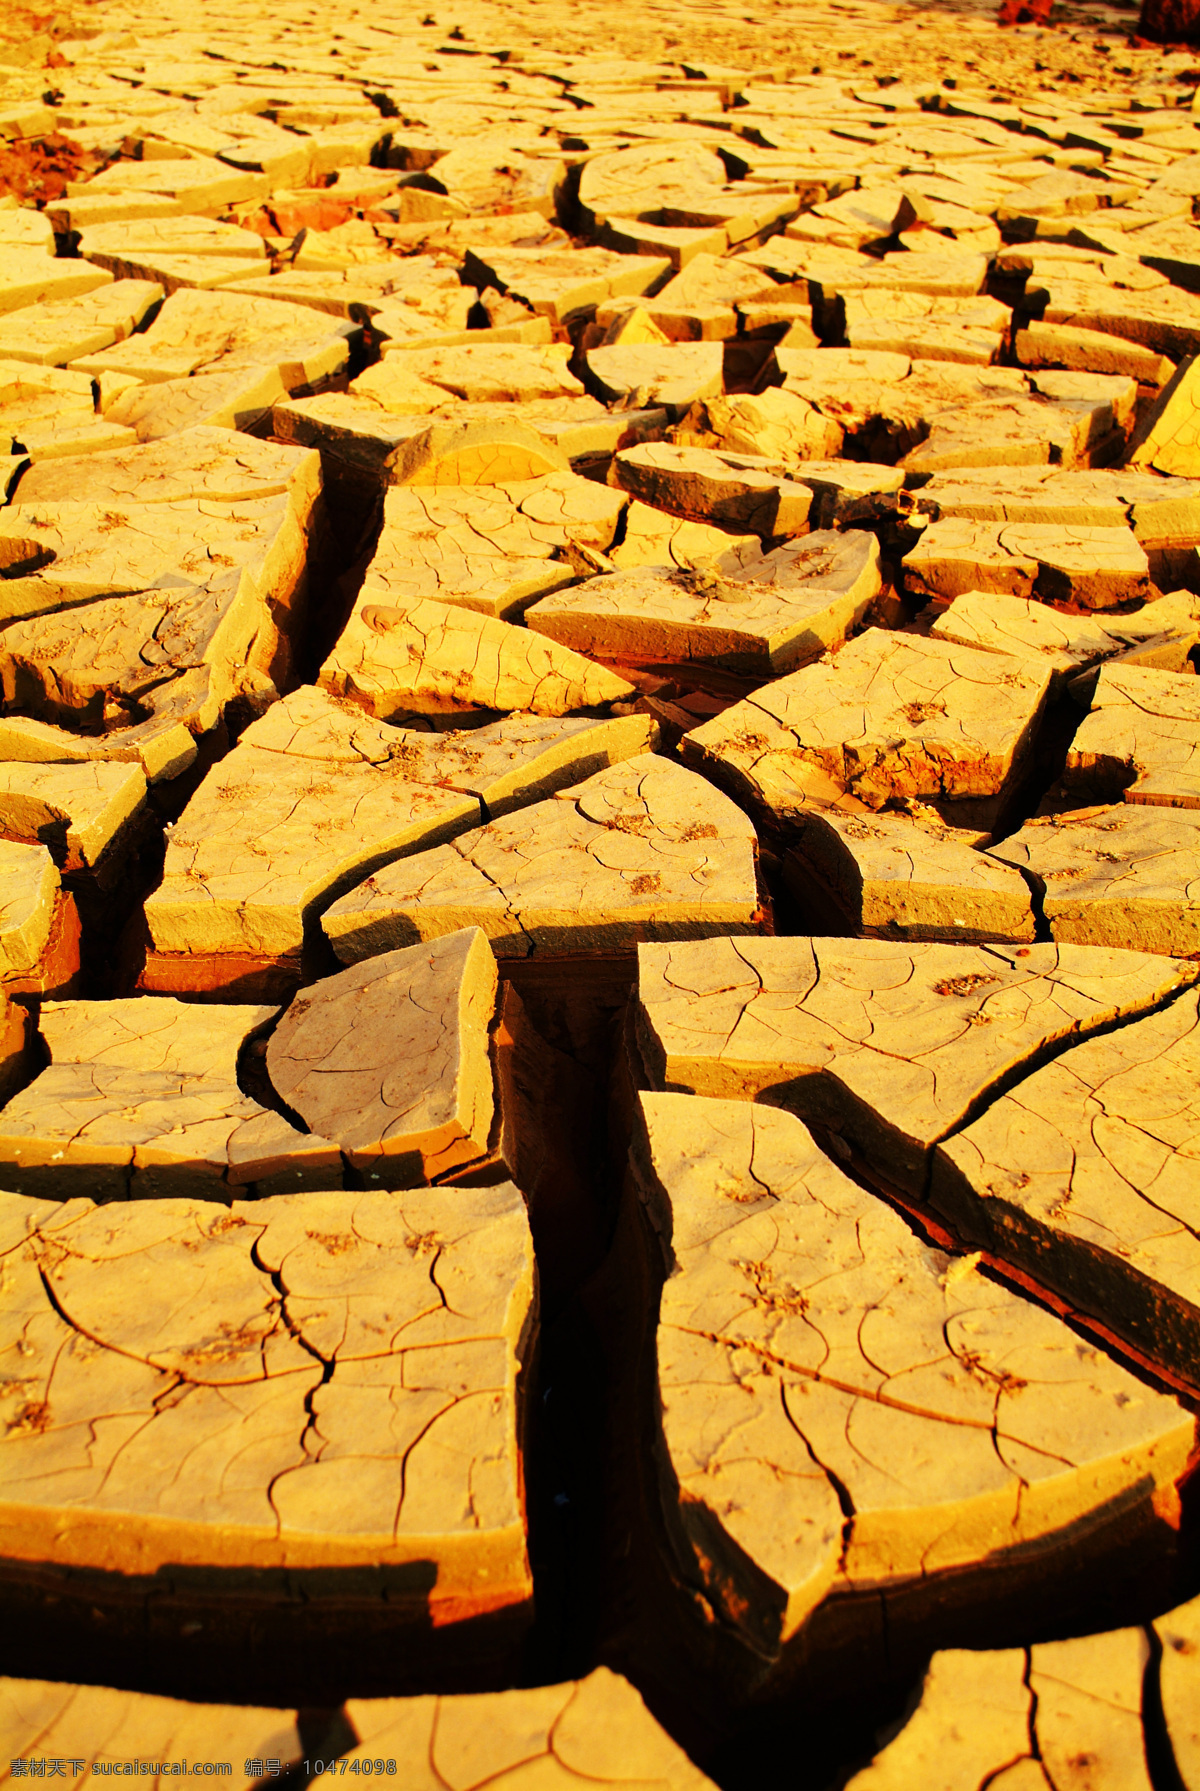 土地裂缝摄影 龟裂的土地 裂缝 裂纹 干枯的土地 干枯的地面 干涸 干旱 旱灾 自然风景 自然景观 黄色